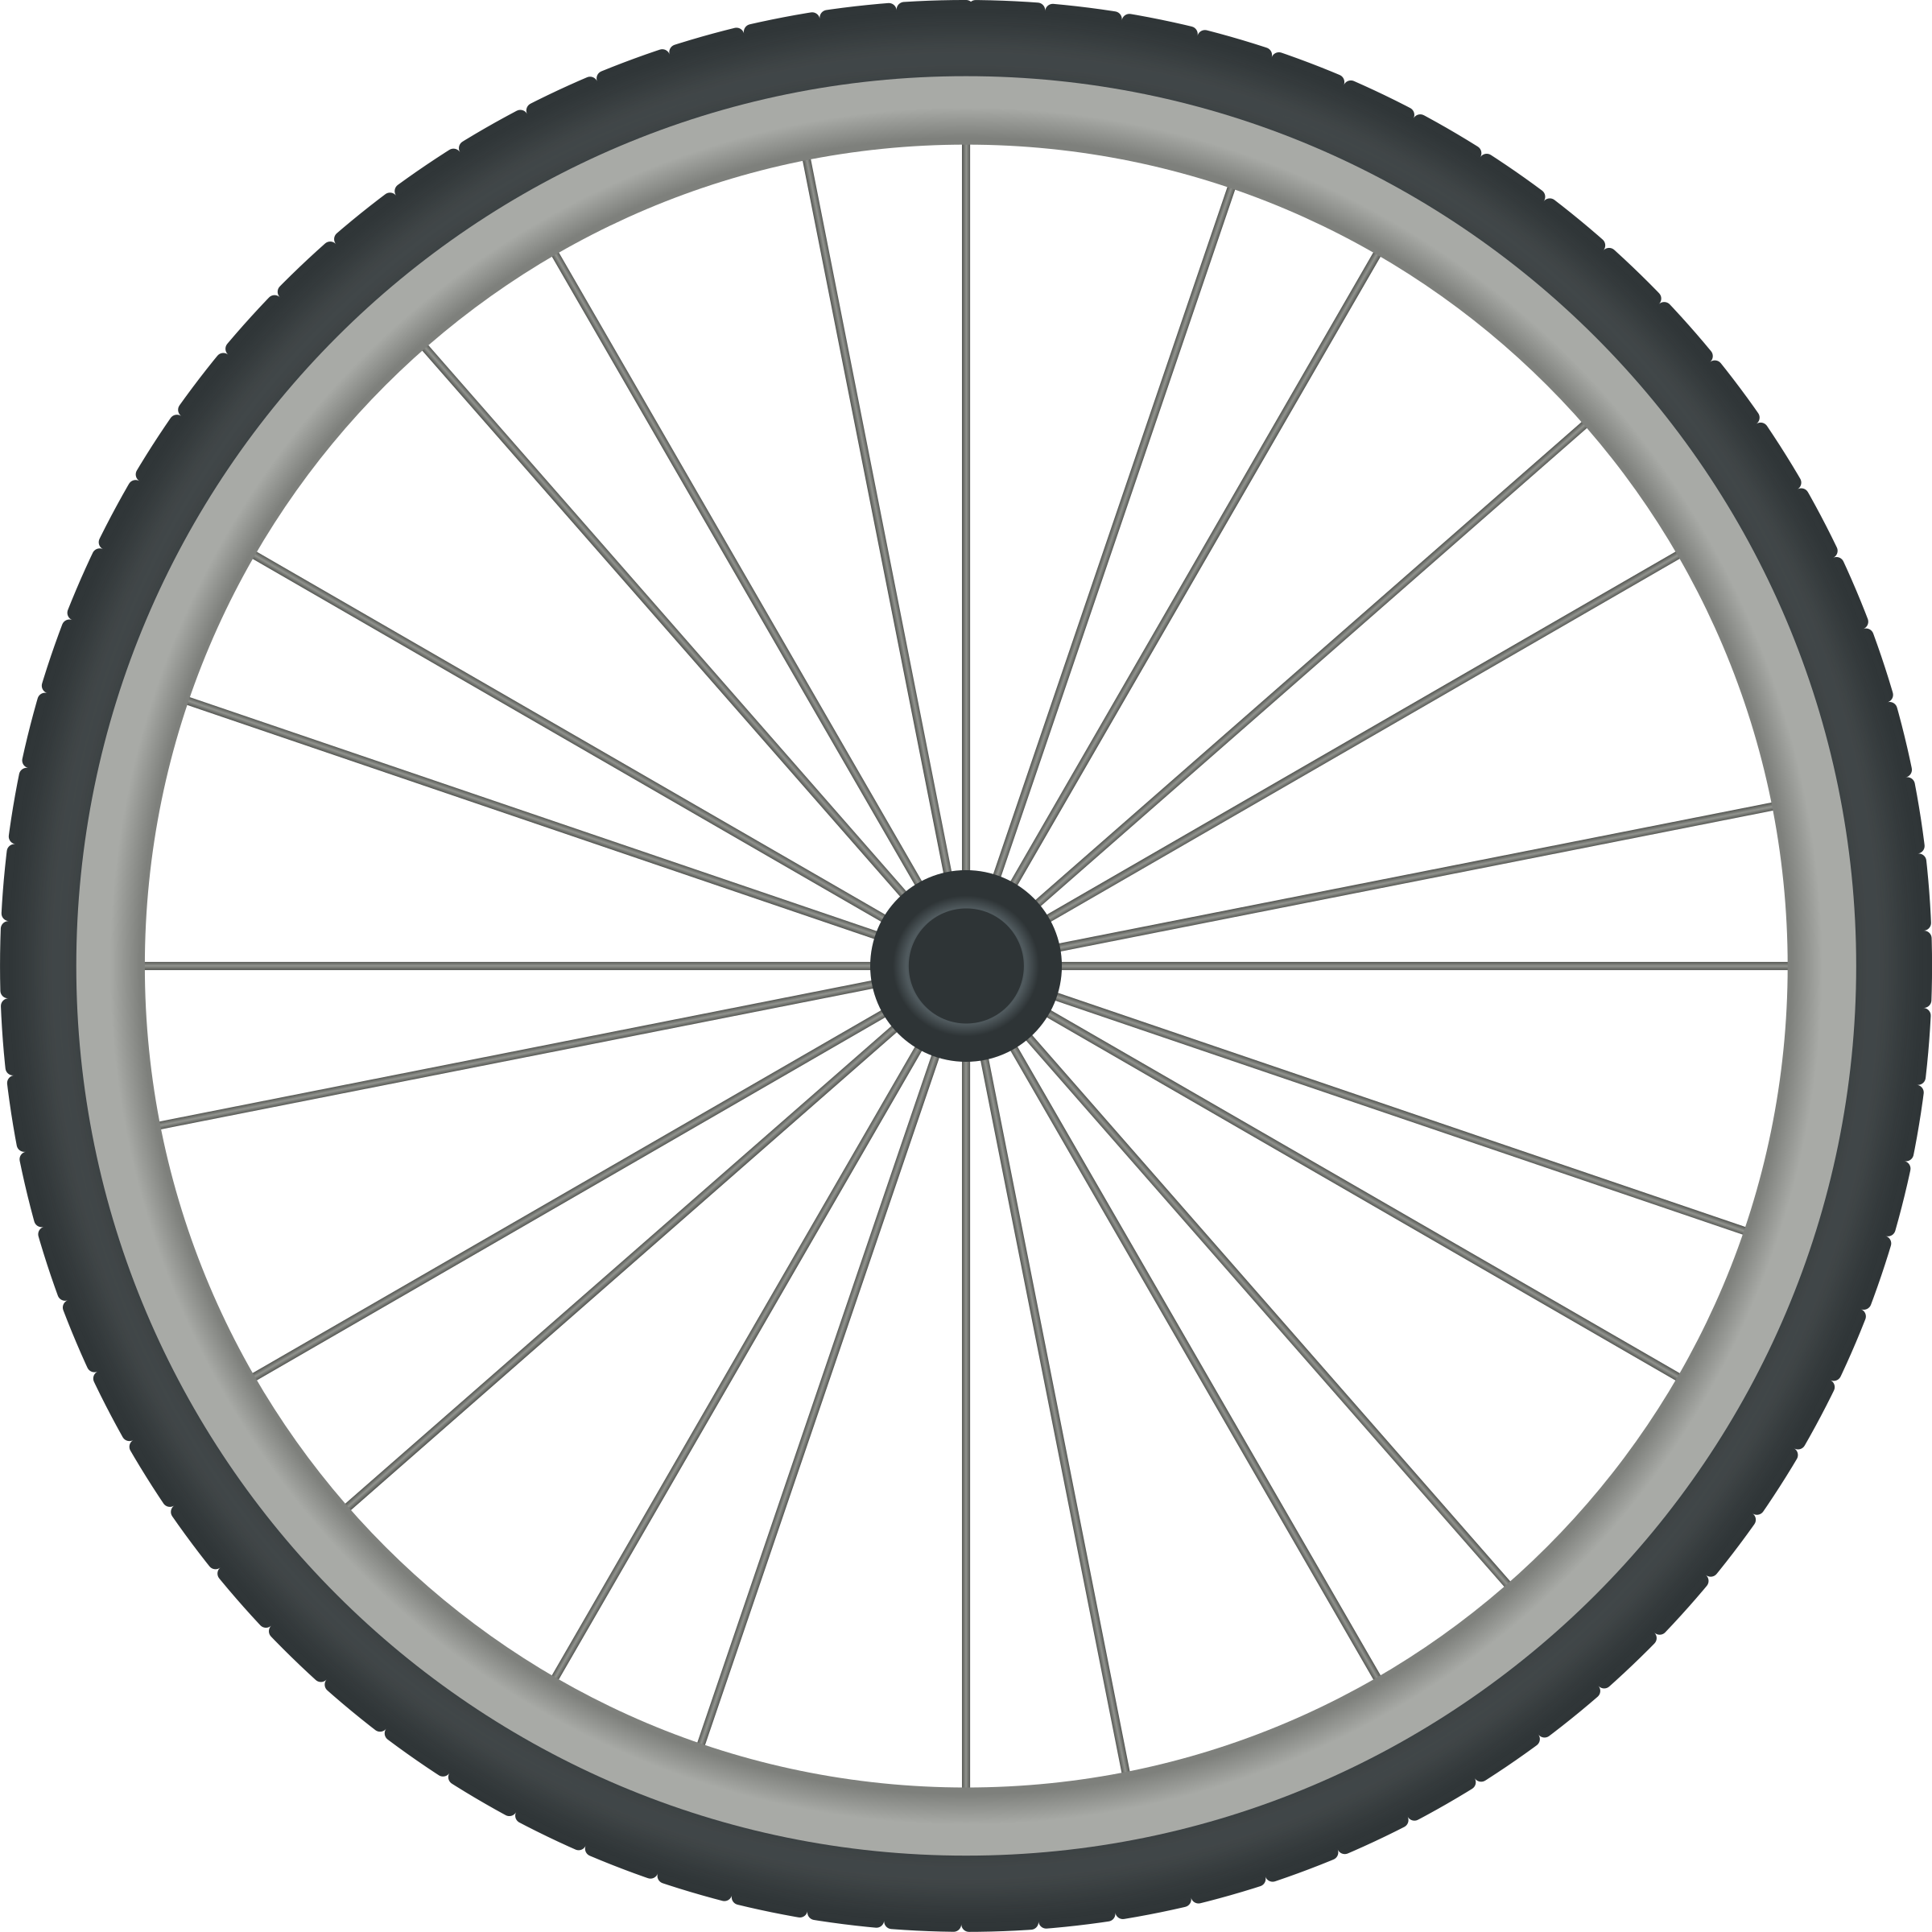 Bikewheel big image png. Wheel clipart simple